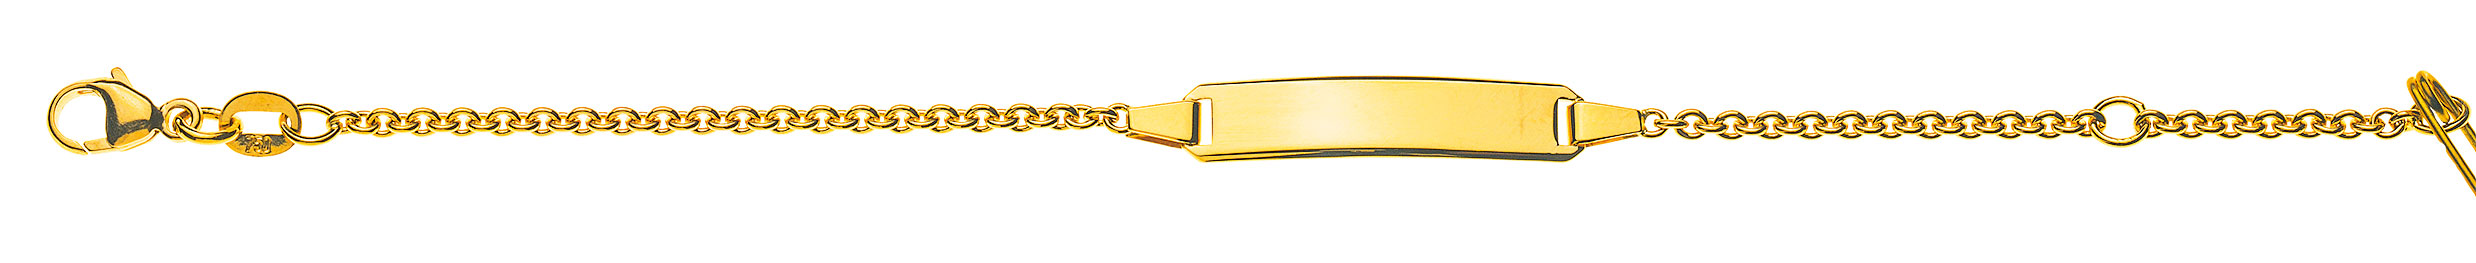 AURONOS Prestige ID-Bracelet en or jaune 18k Chaîne d'ancre ronde 18cm